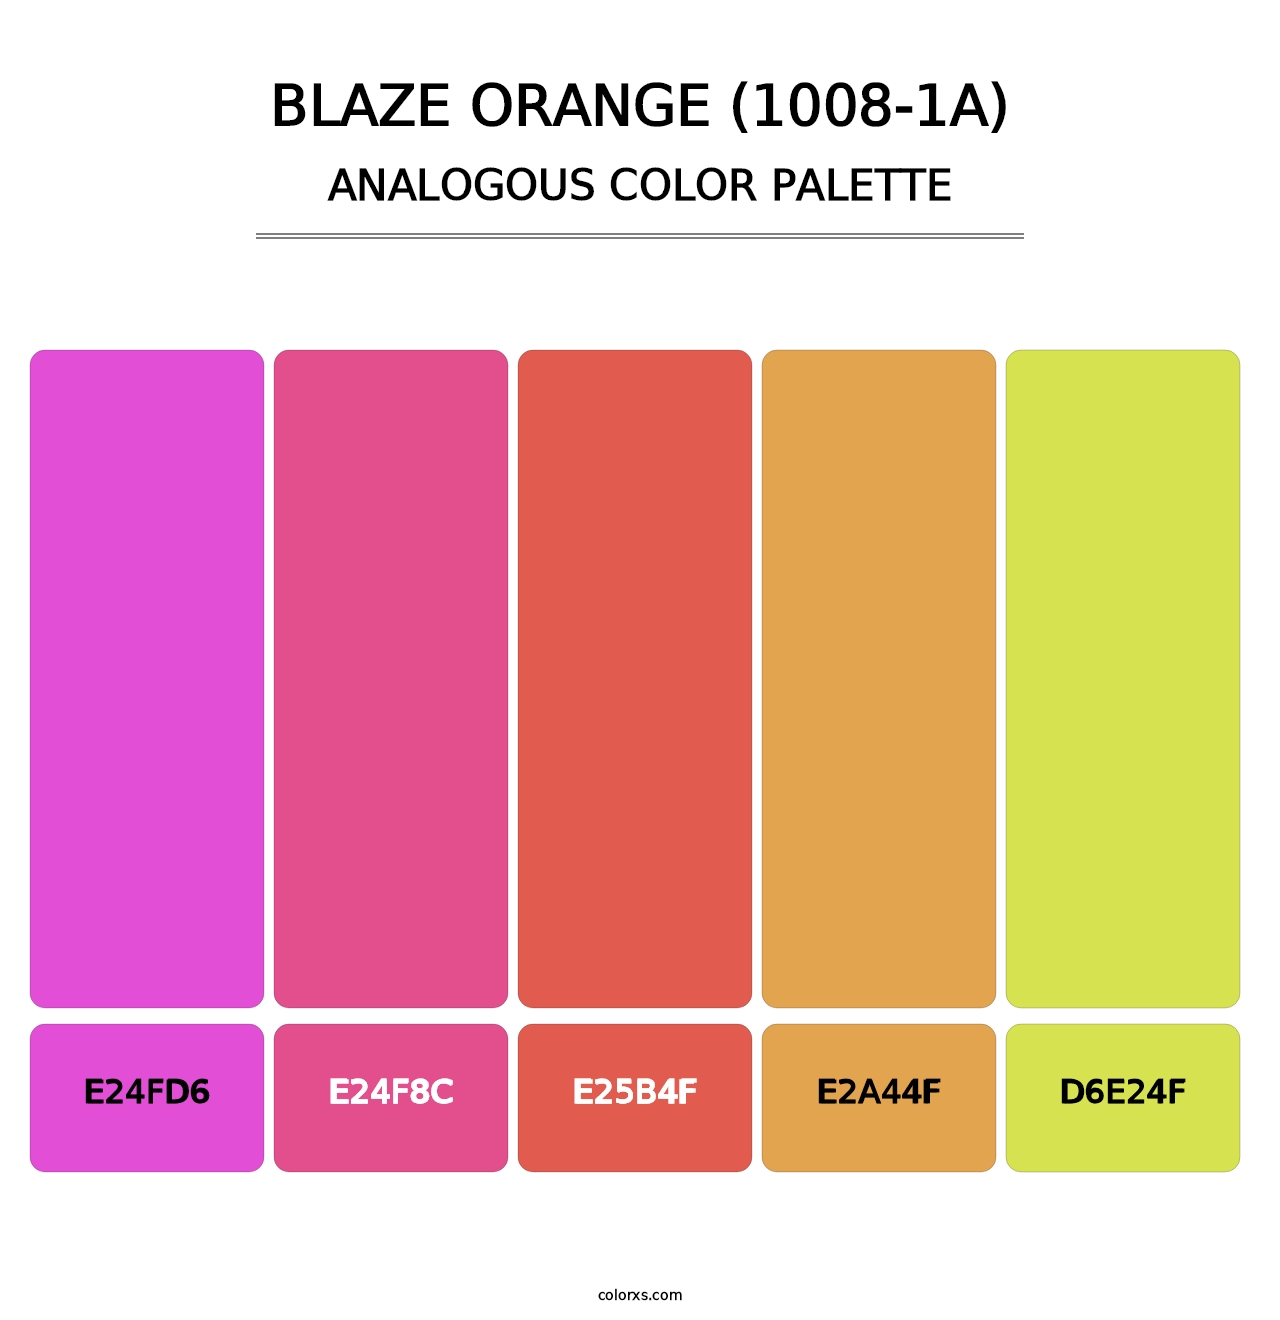 Blaze Orange (1008-1A) - Analogous Color Palette